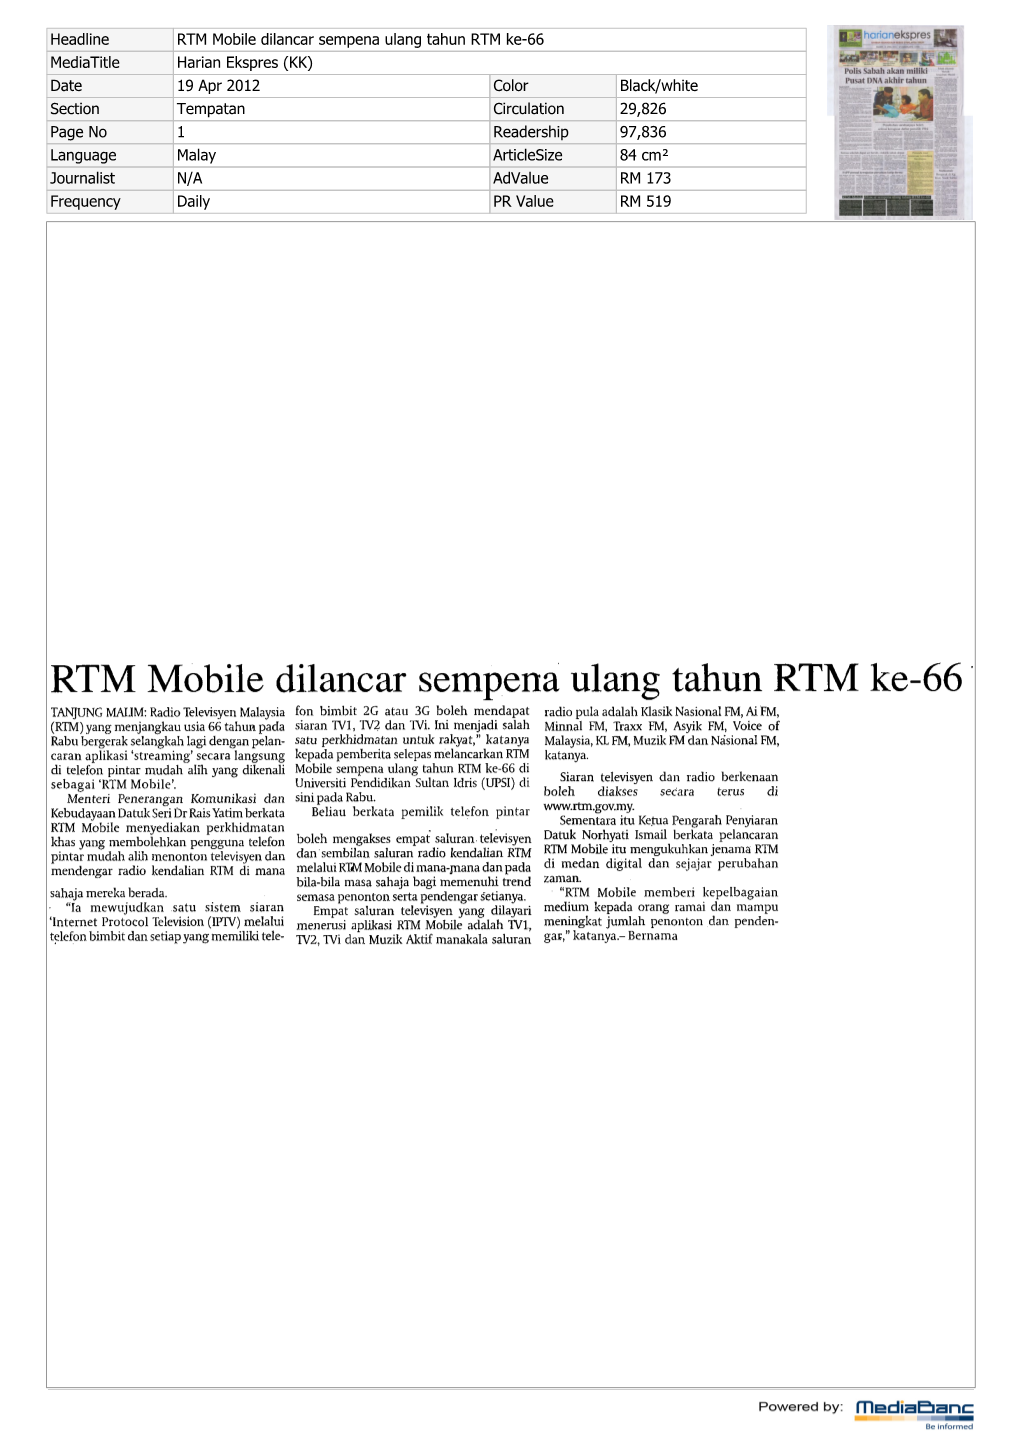 RTM Mobile Dilancar Sempena Ulang Tahun RTM Ke66